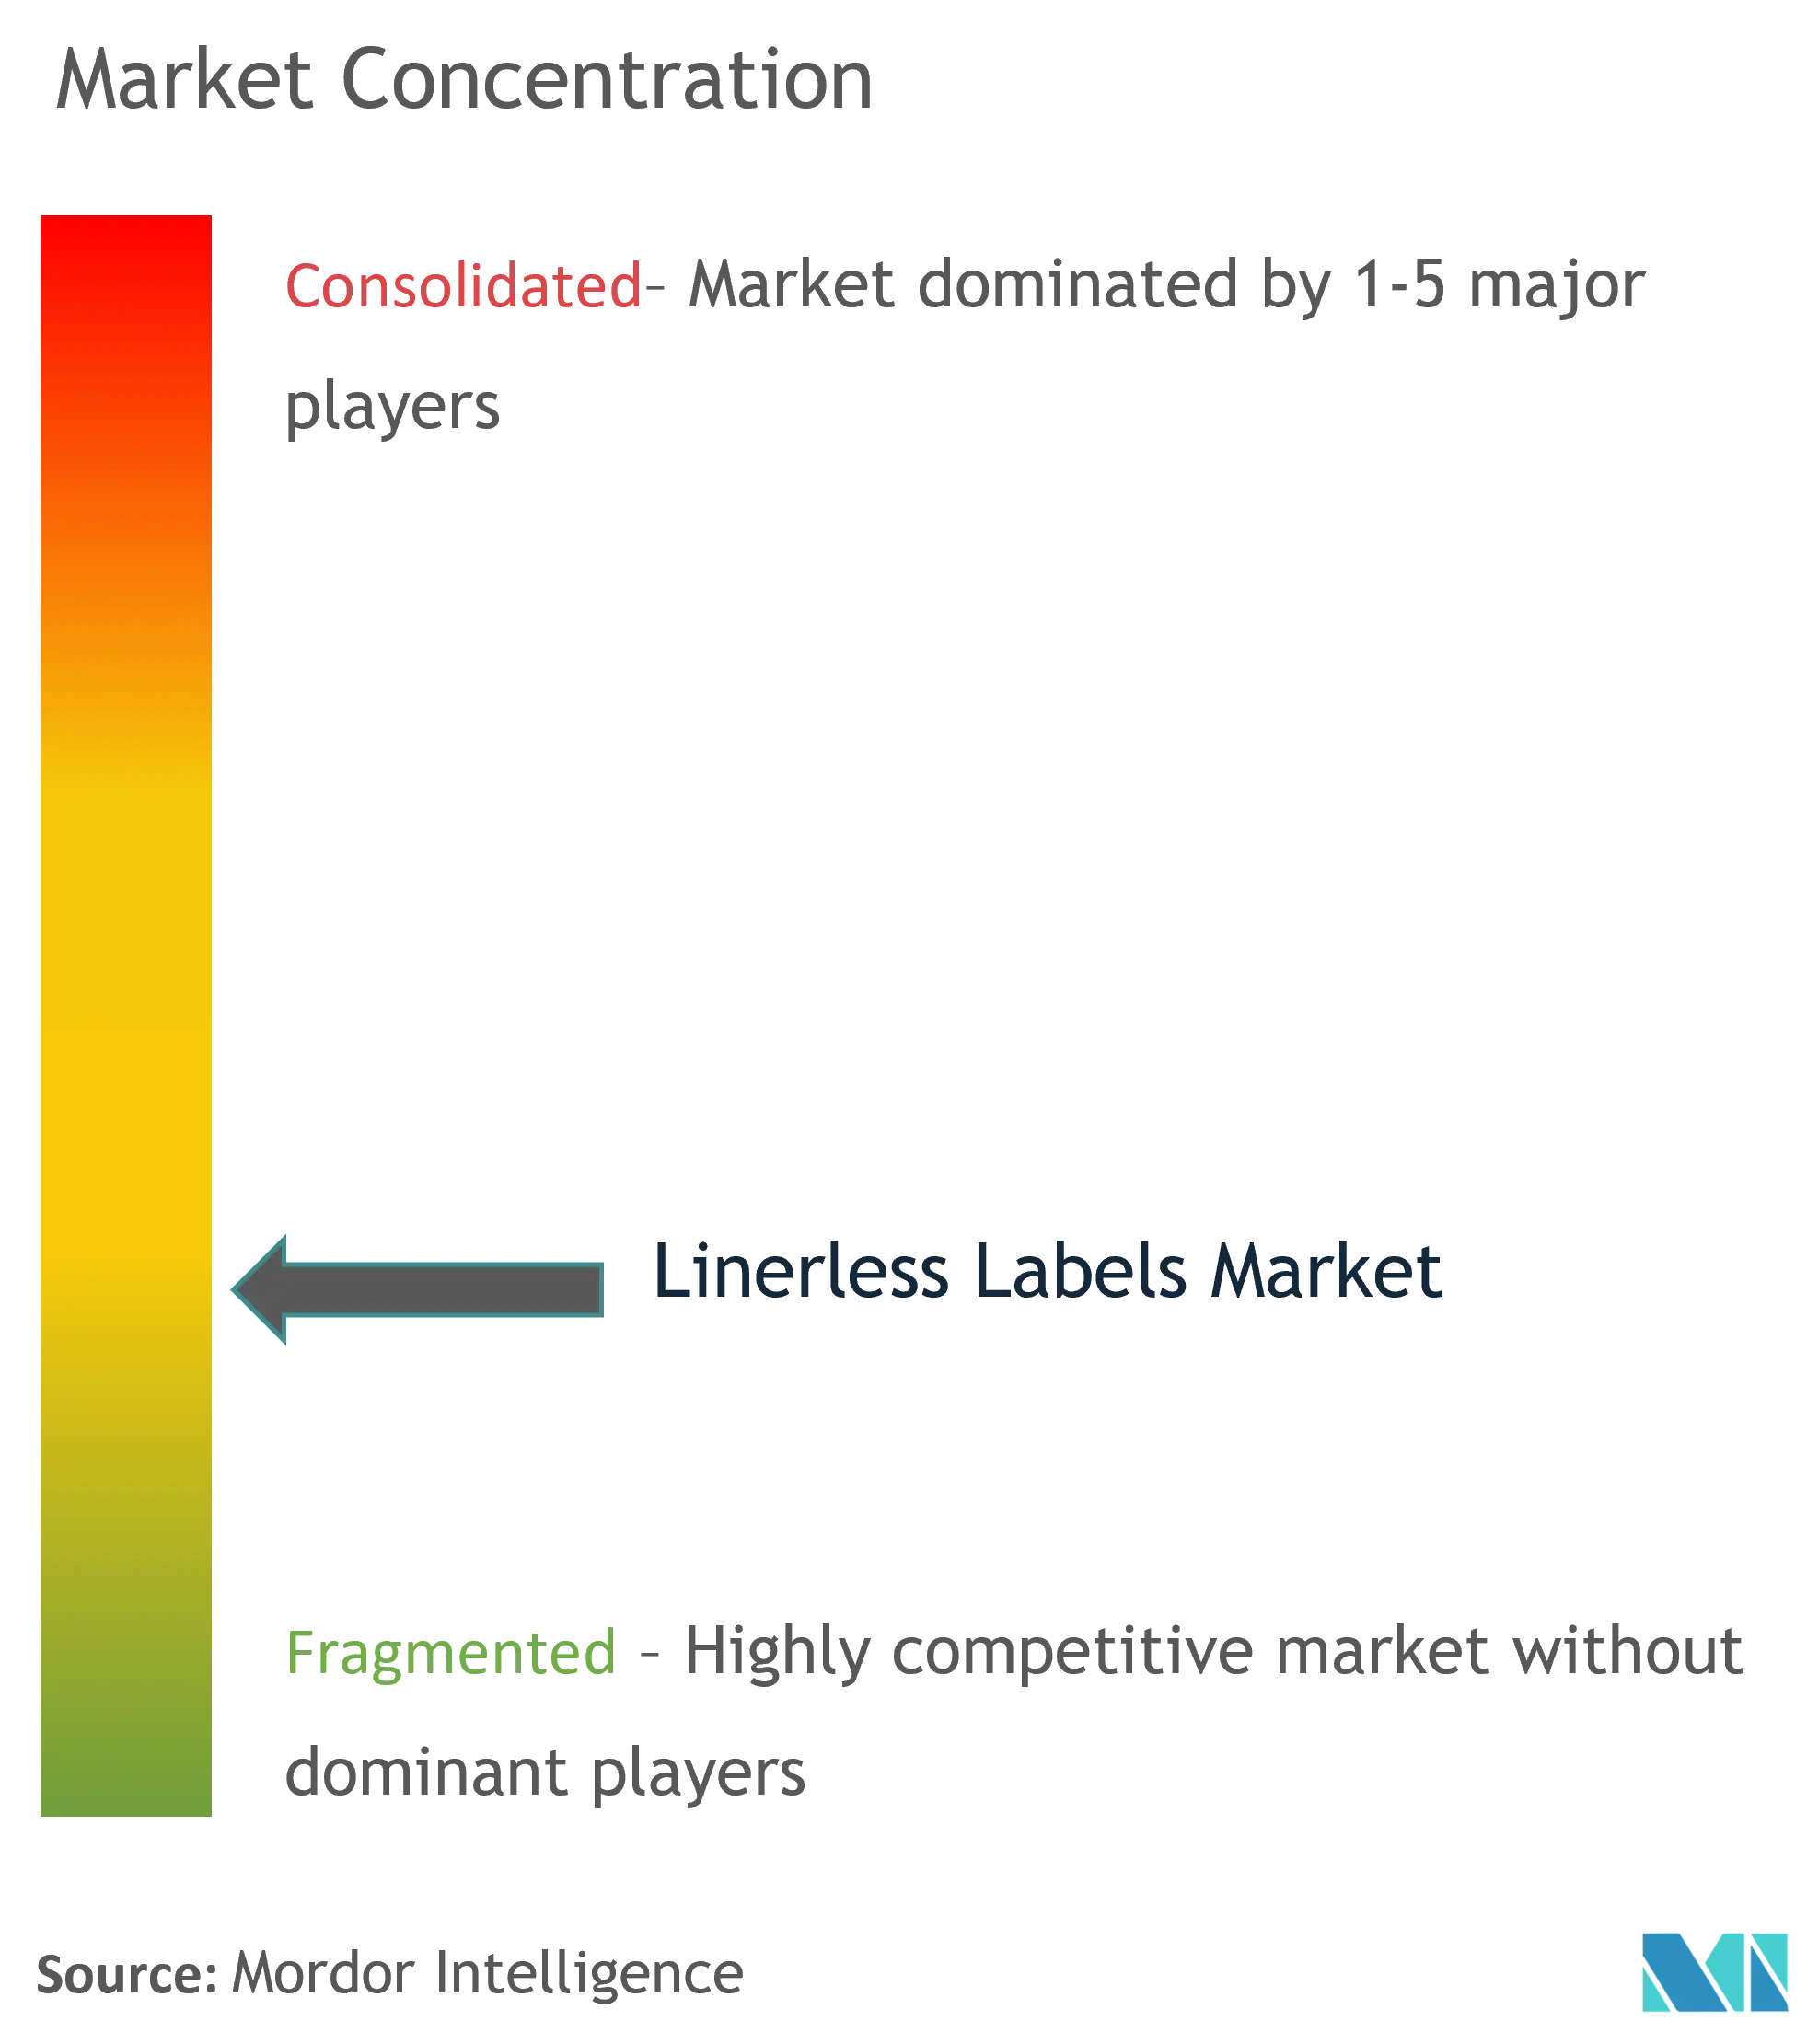 Linerless Labels Market - Market Concentration.png